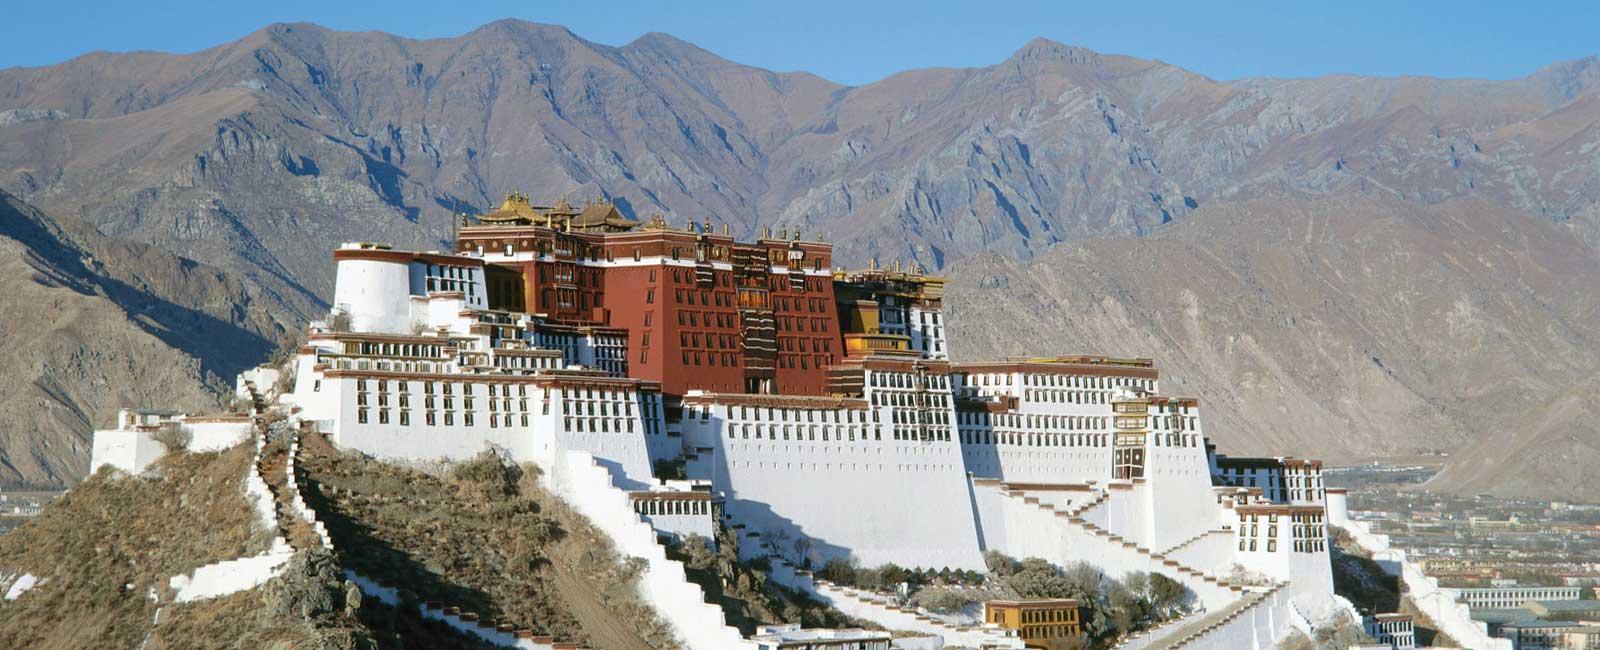 Lhasa Land of God Tour - 4 Days